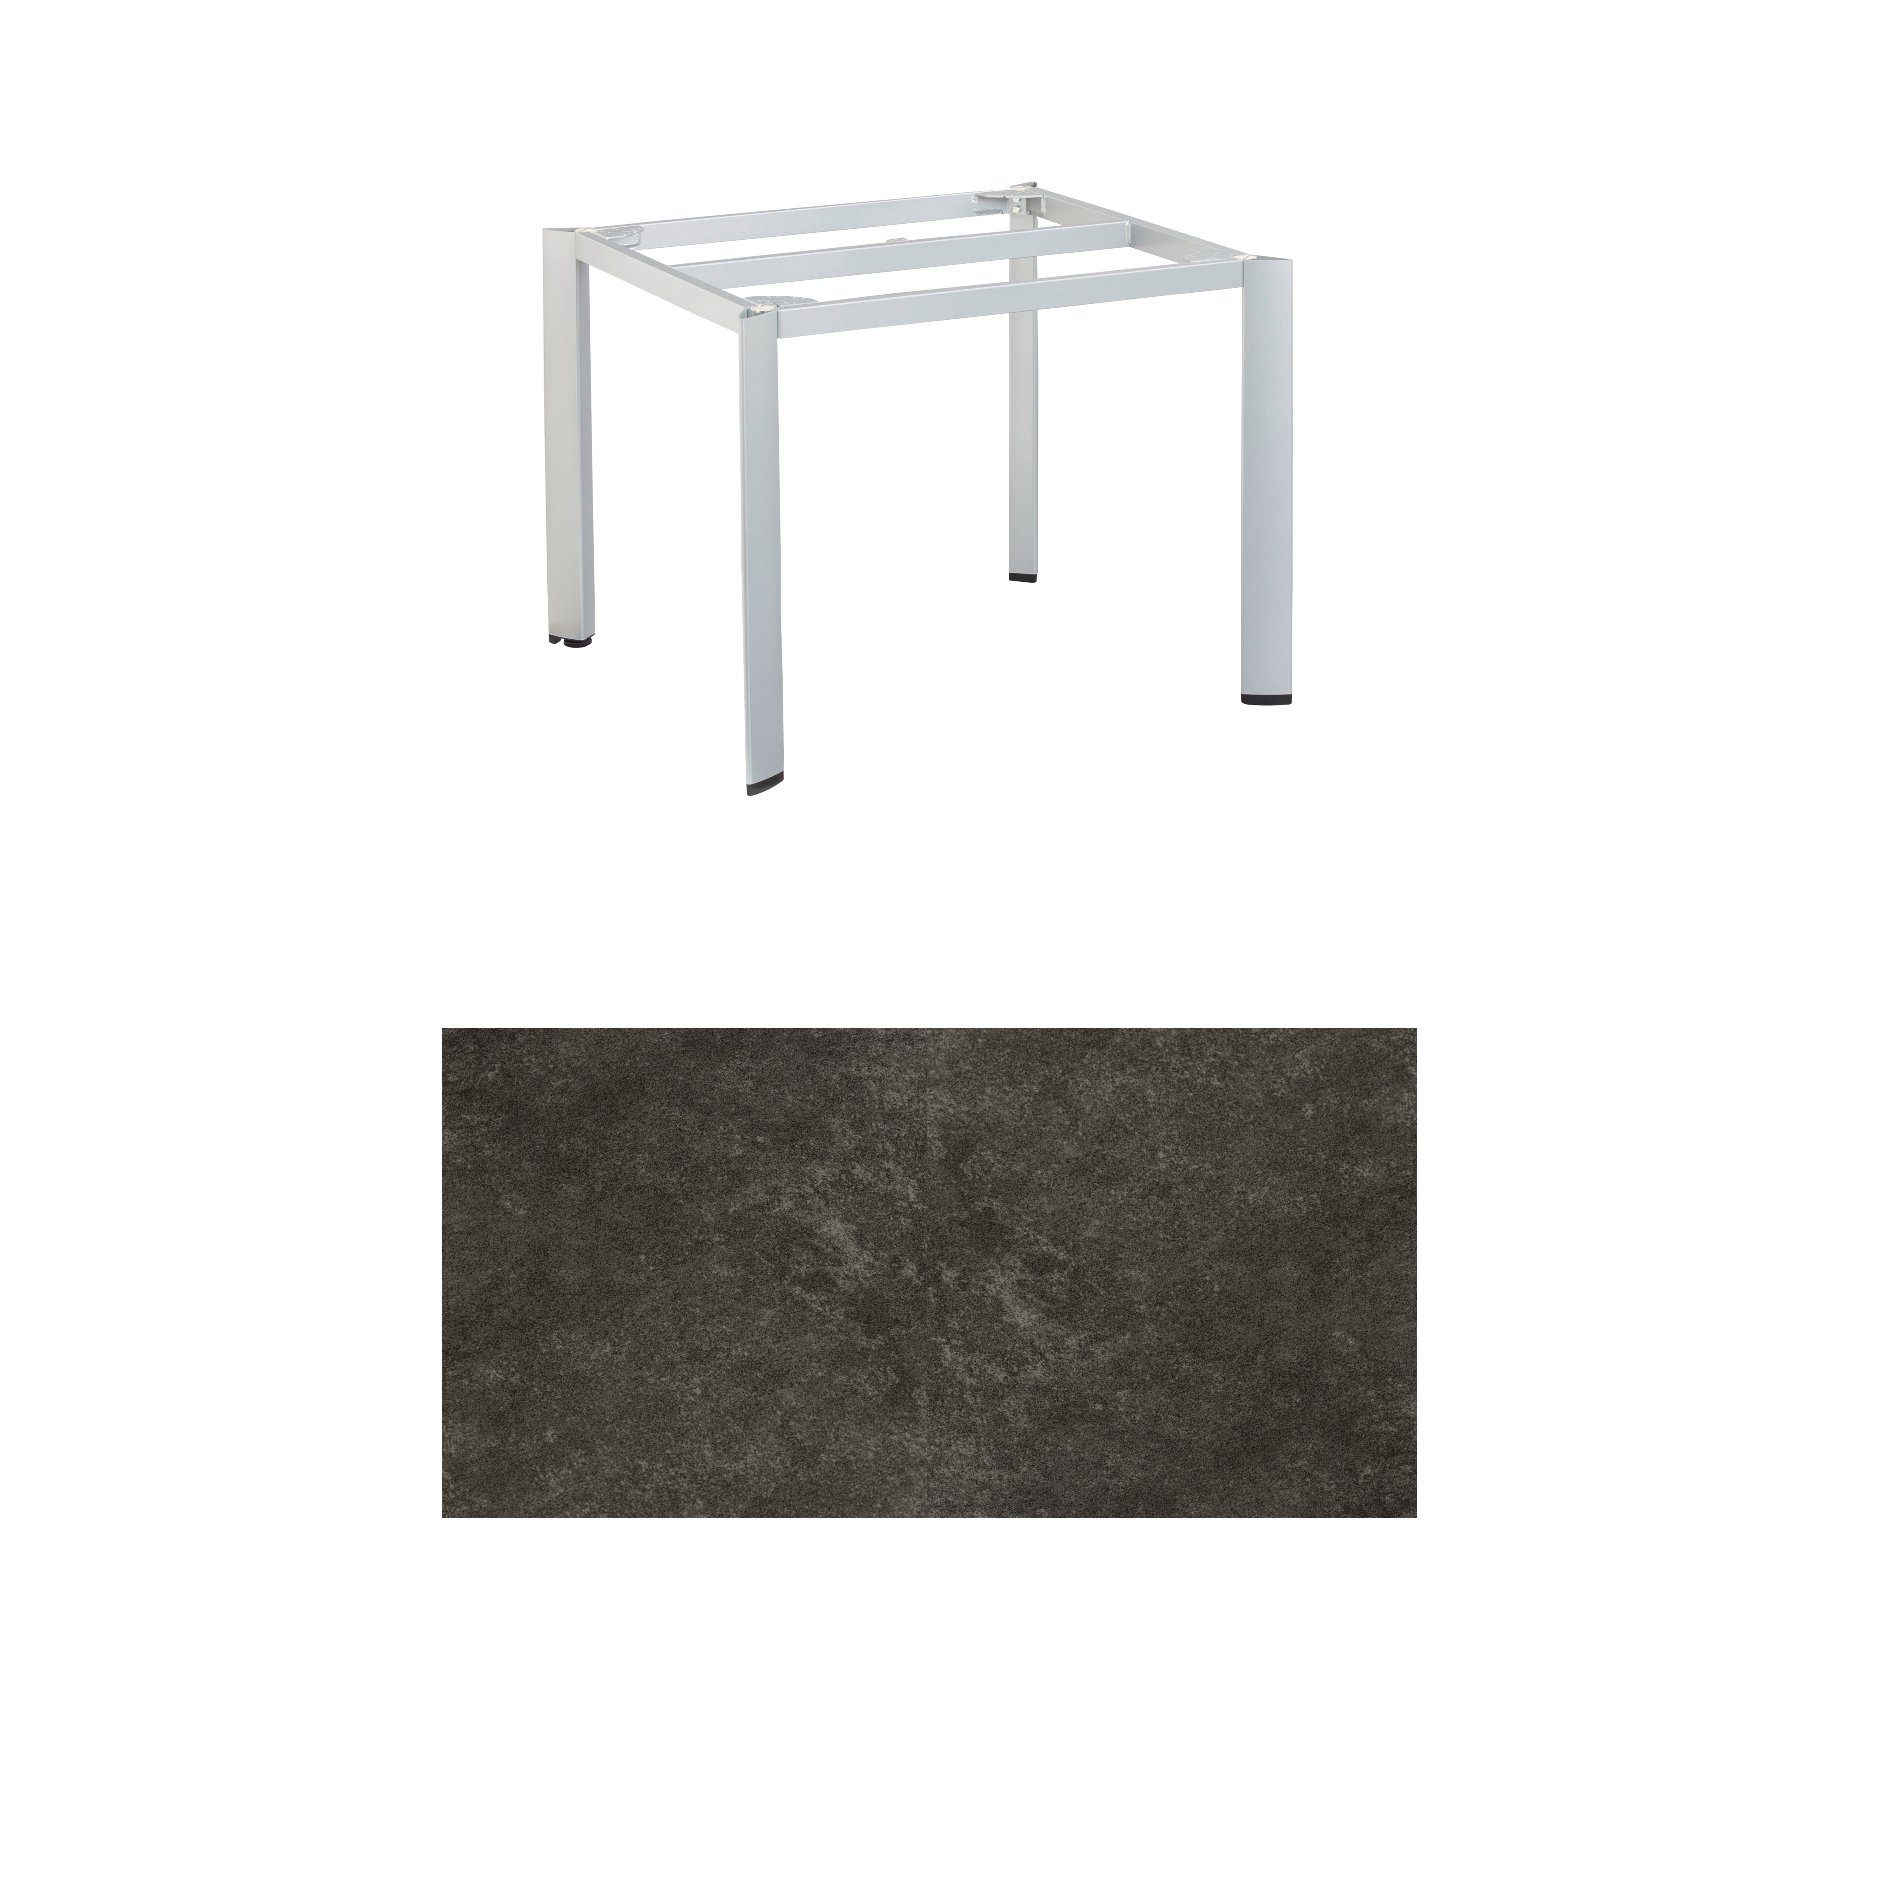 Kettler Gartentisch, Tischgestell 95x95cm "Edge", Aluminium silber, mit Tischplatte Keramik anthrazit